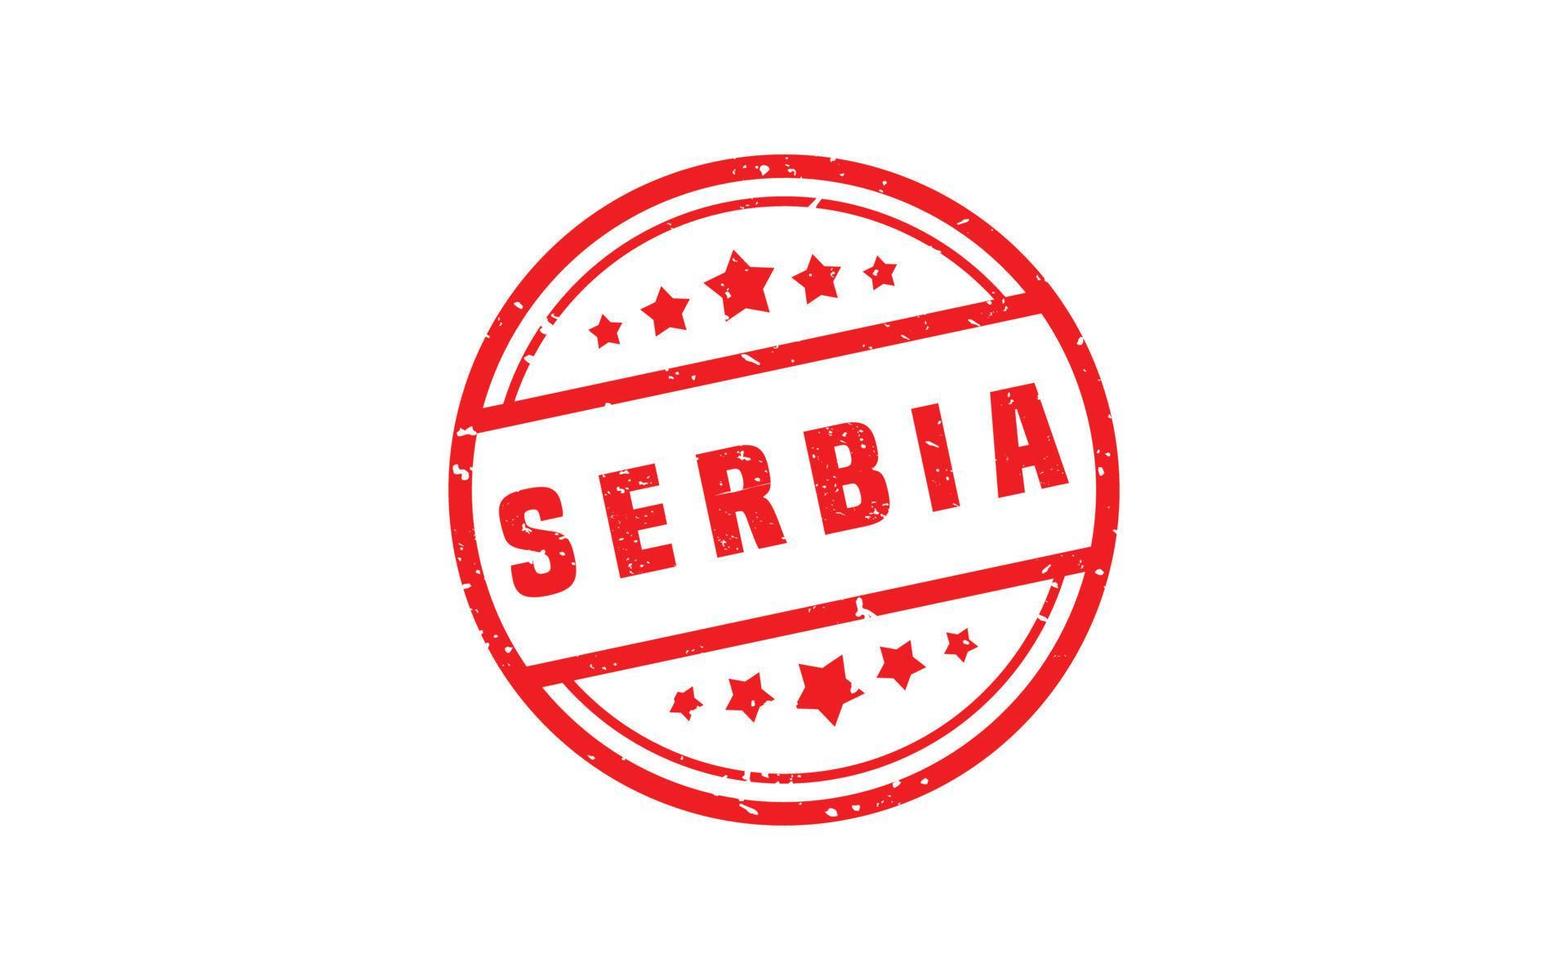 serbia stämpel sudd med grunge stil på vit bakgrund vektor